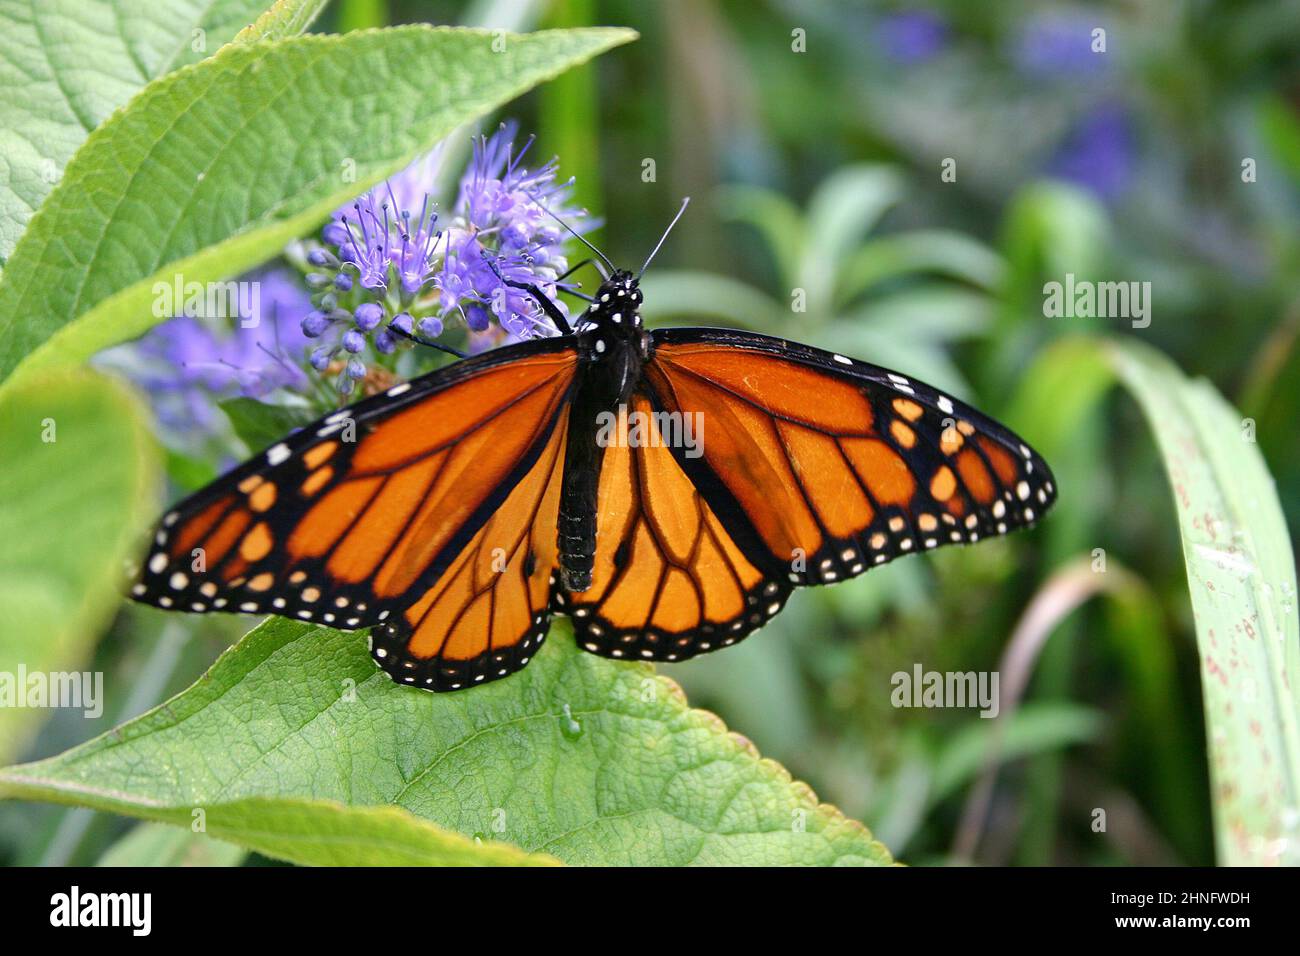 Primer plano de una mariposa monarca naranja, blanca y negra magníficamente hermosa bebiendo néctar de una flor púrpura Foto de stock